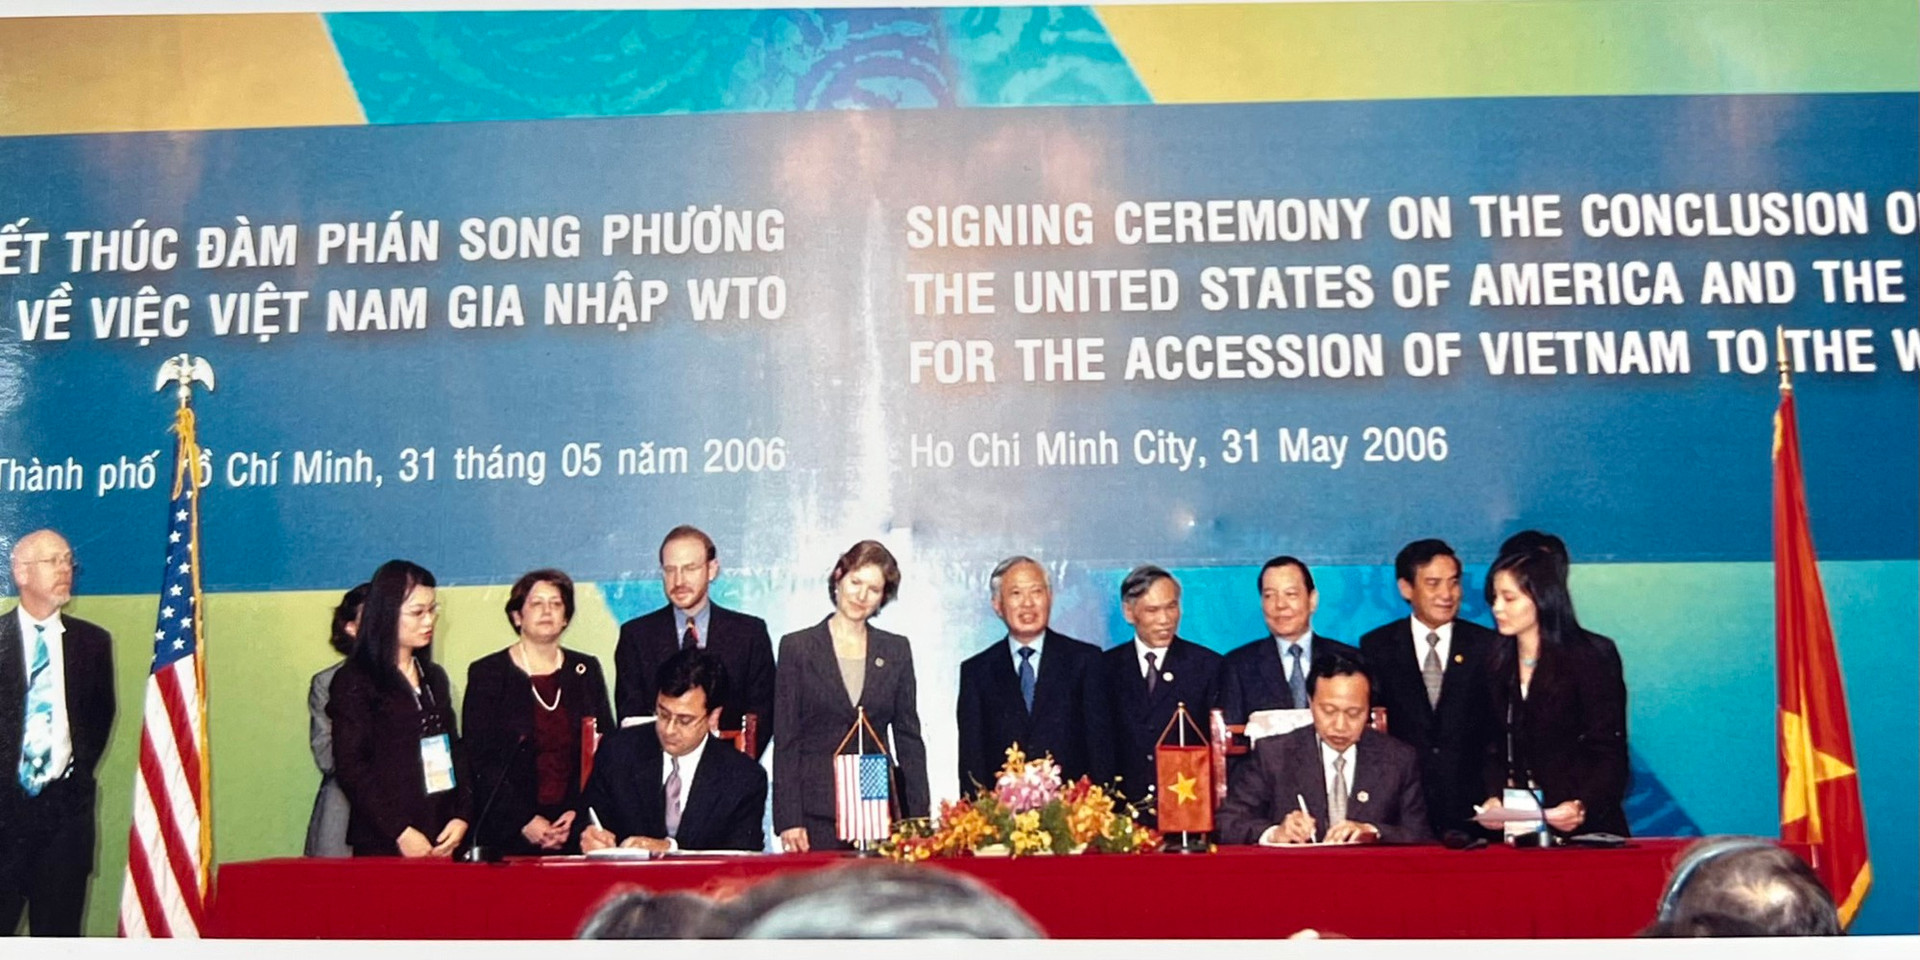 Dấu ấn lớn của nguyên Phó Thủ tướng Vũ Khoan trên con đường hội nhập kinh tế quốc tế - Ảnh 1.